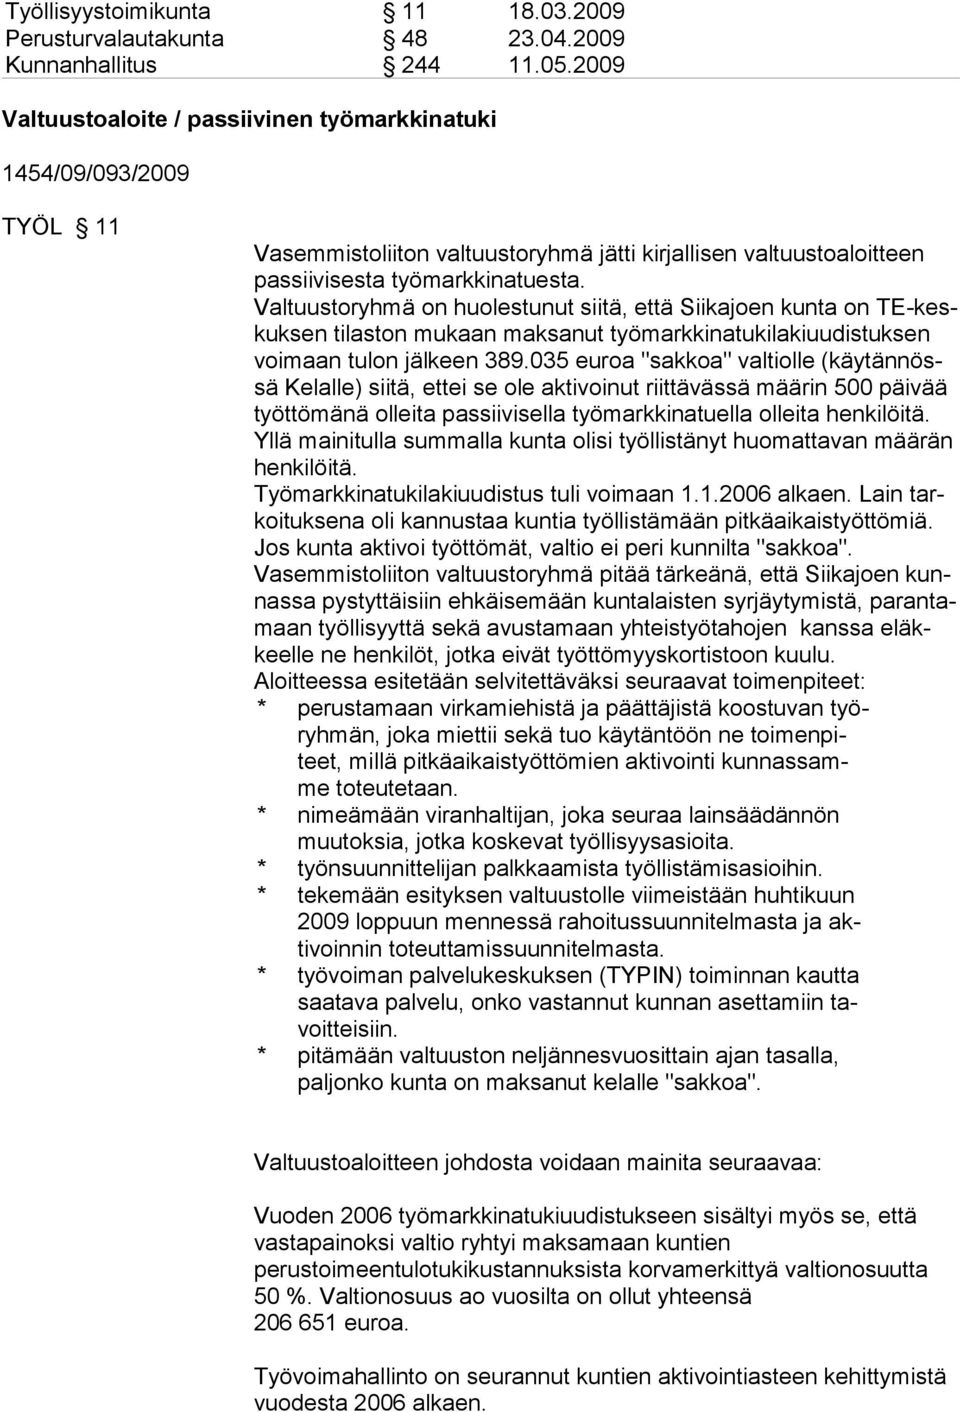 Valtuustoryhmä on huolestunut siitä, että Siikajoen kunta on TE-keskuksen tilaston mukaan maksanut työmarkkinatukilakiuudistuksen voimaan tulon jälkeen 389.